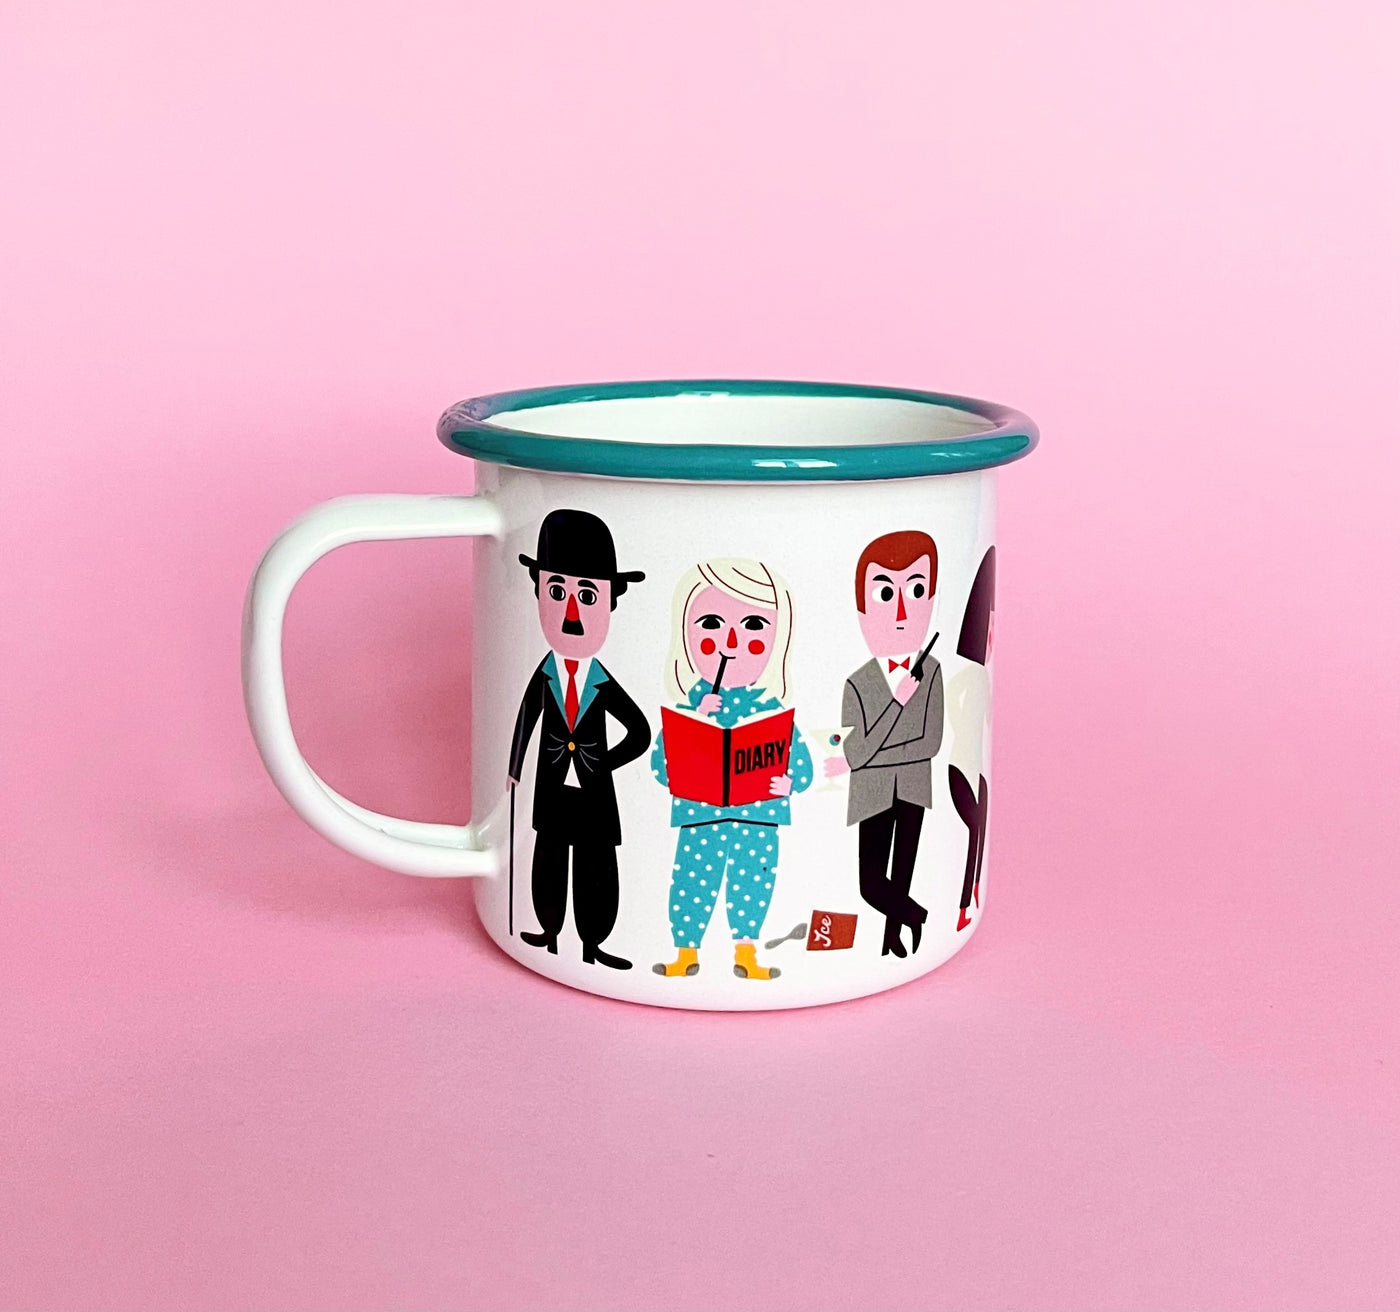 OMM Design  "Movie lover" mug